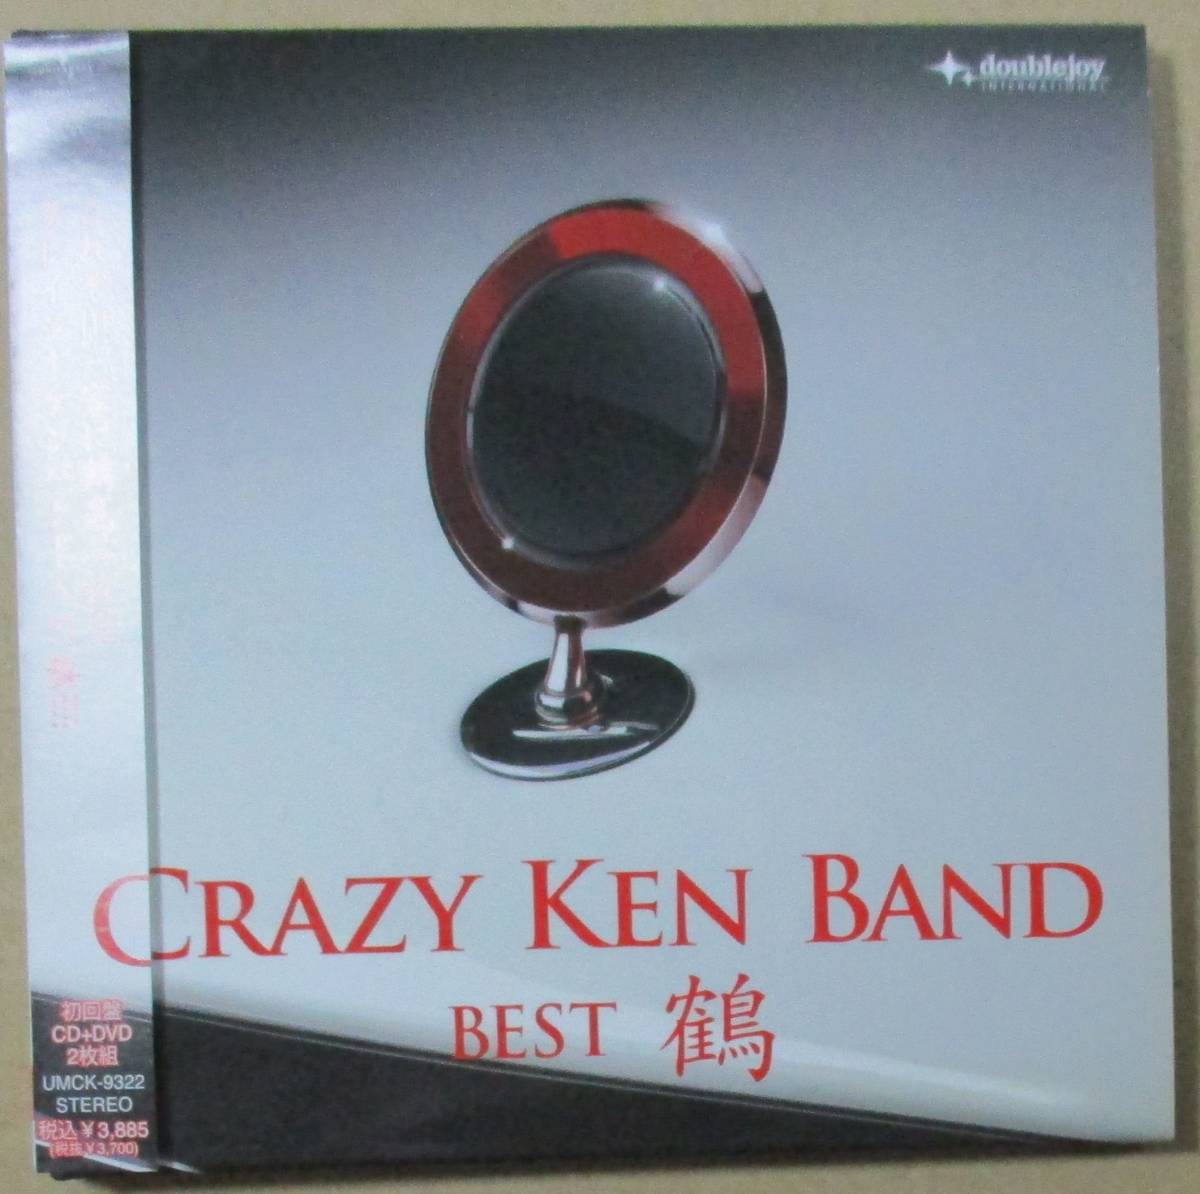 【受賞店舗】 在庫処分大特価 クレイジーケンバンド ベスト BEST 鶴 CD DVD 初回 bigportal.ba bigportal.ba